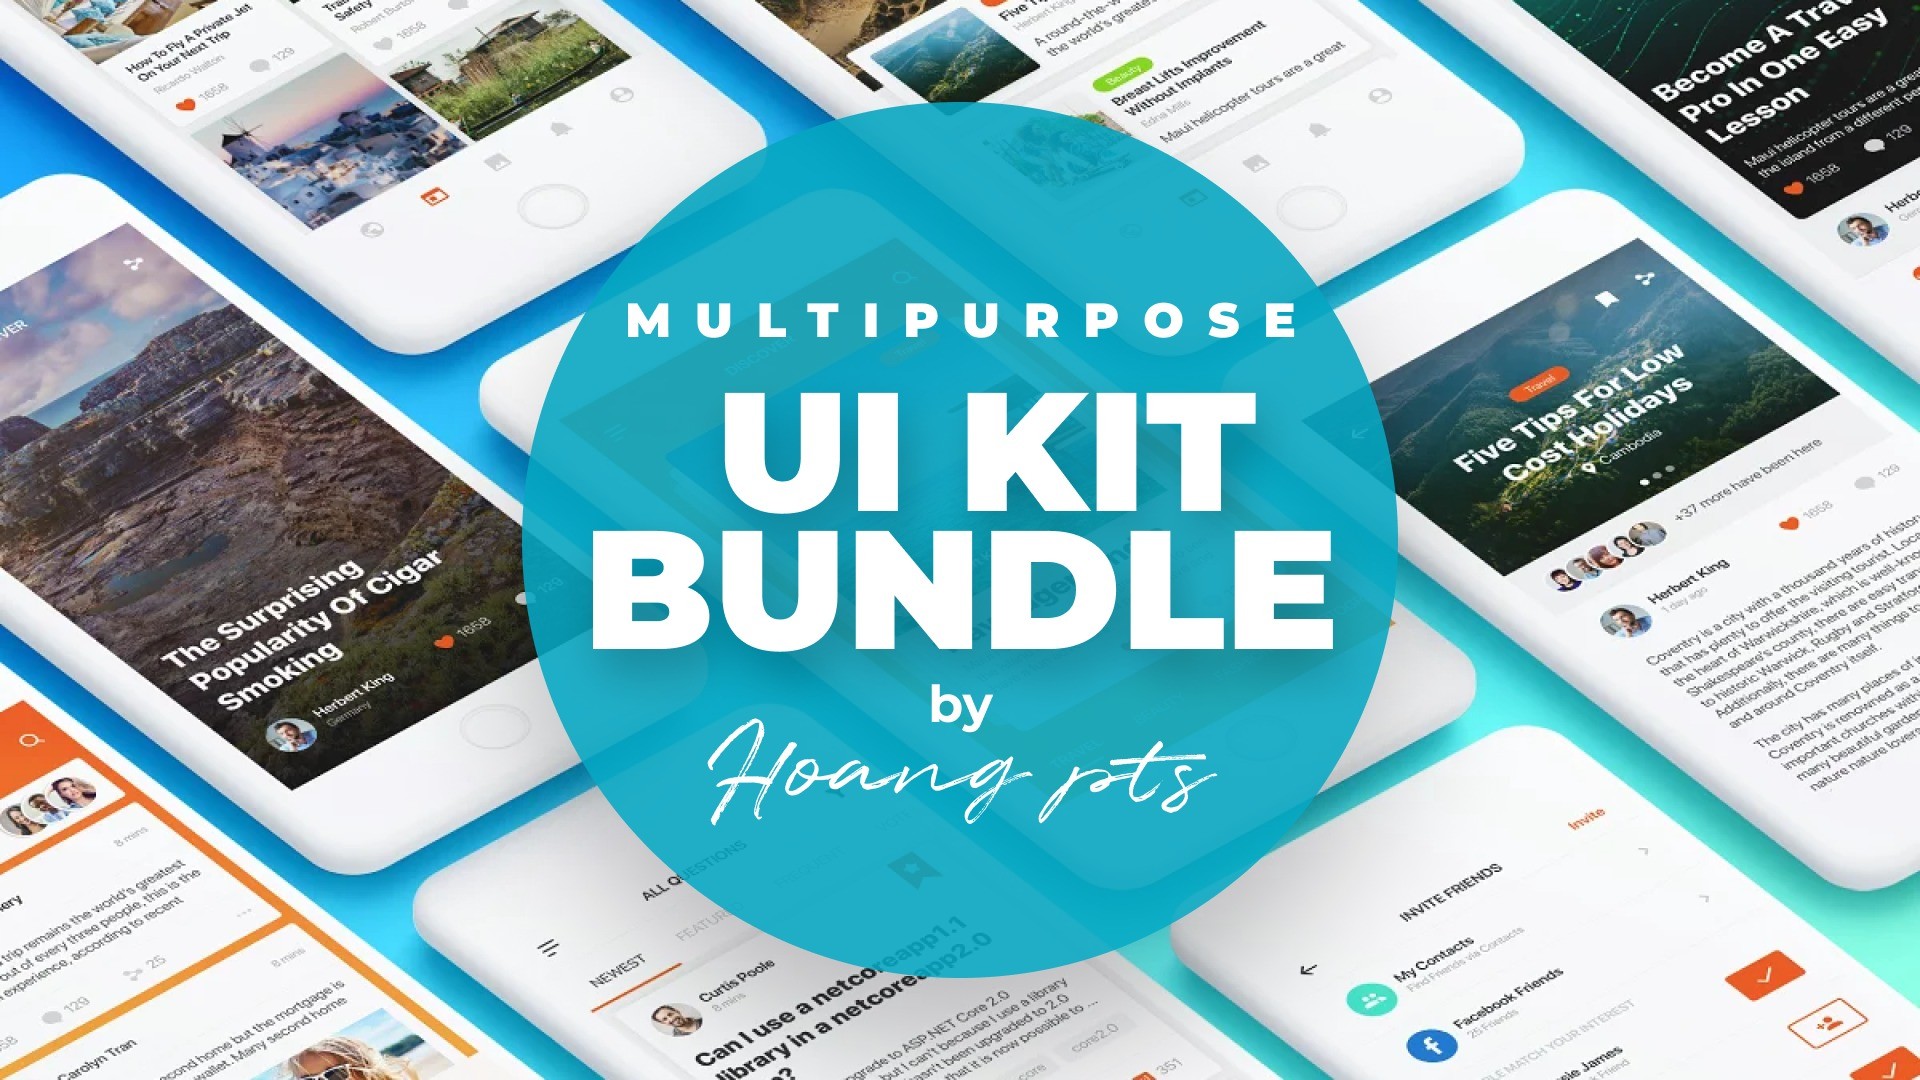 Multipurpose UI Kit Bundle by Hoang pts (Figma & Sketch)